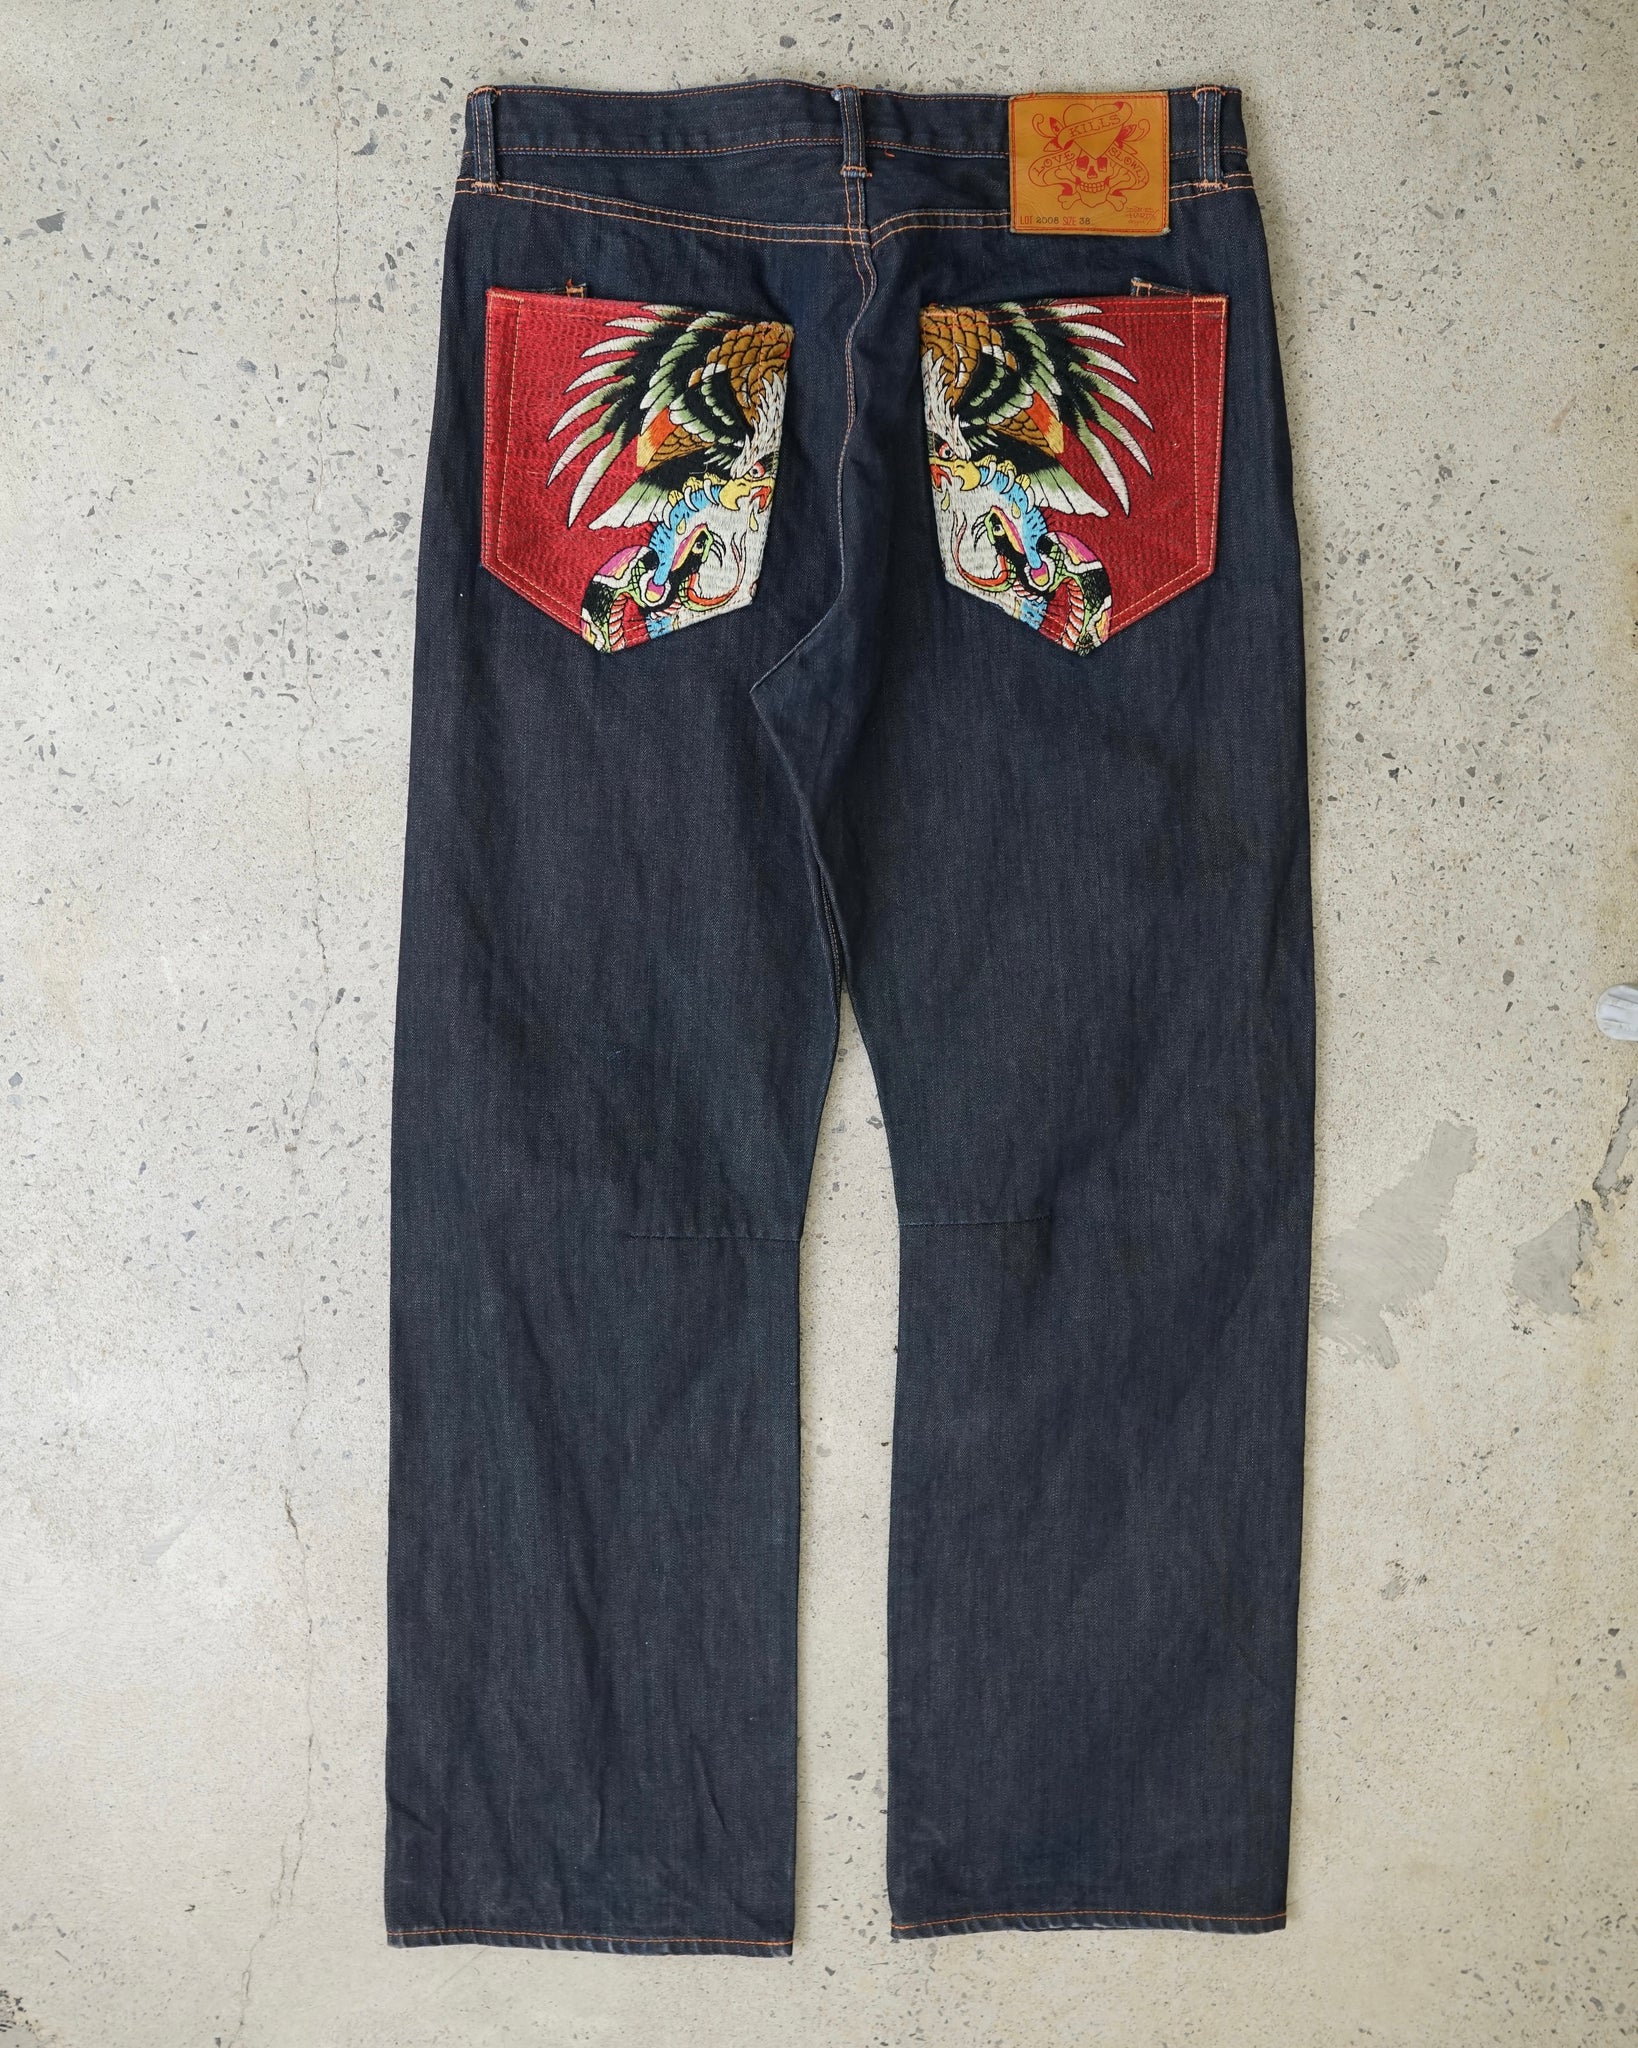 ed hardy jeans - 37x33